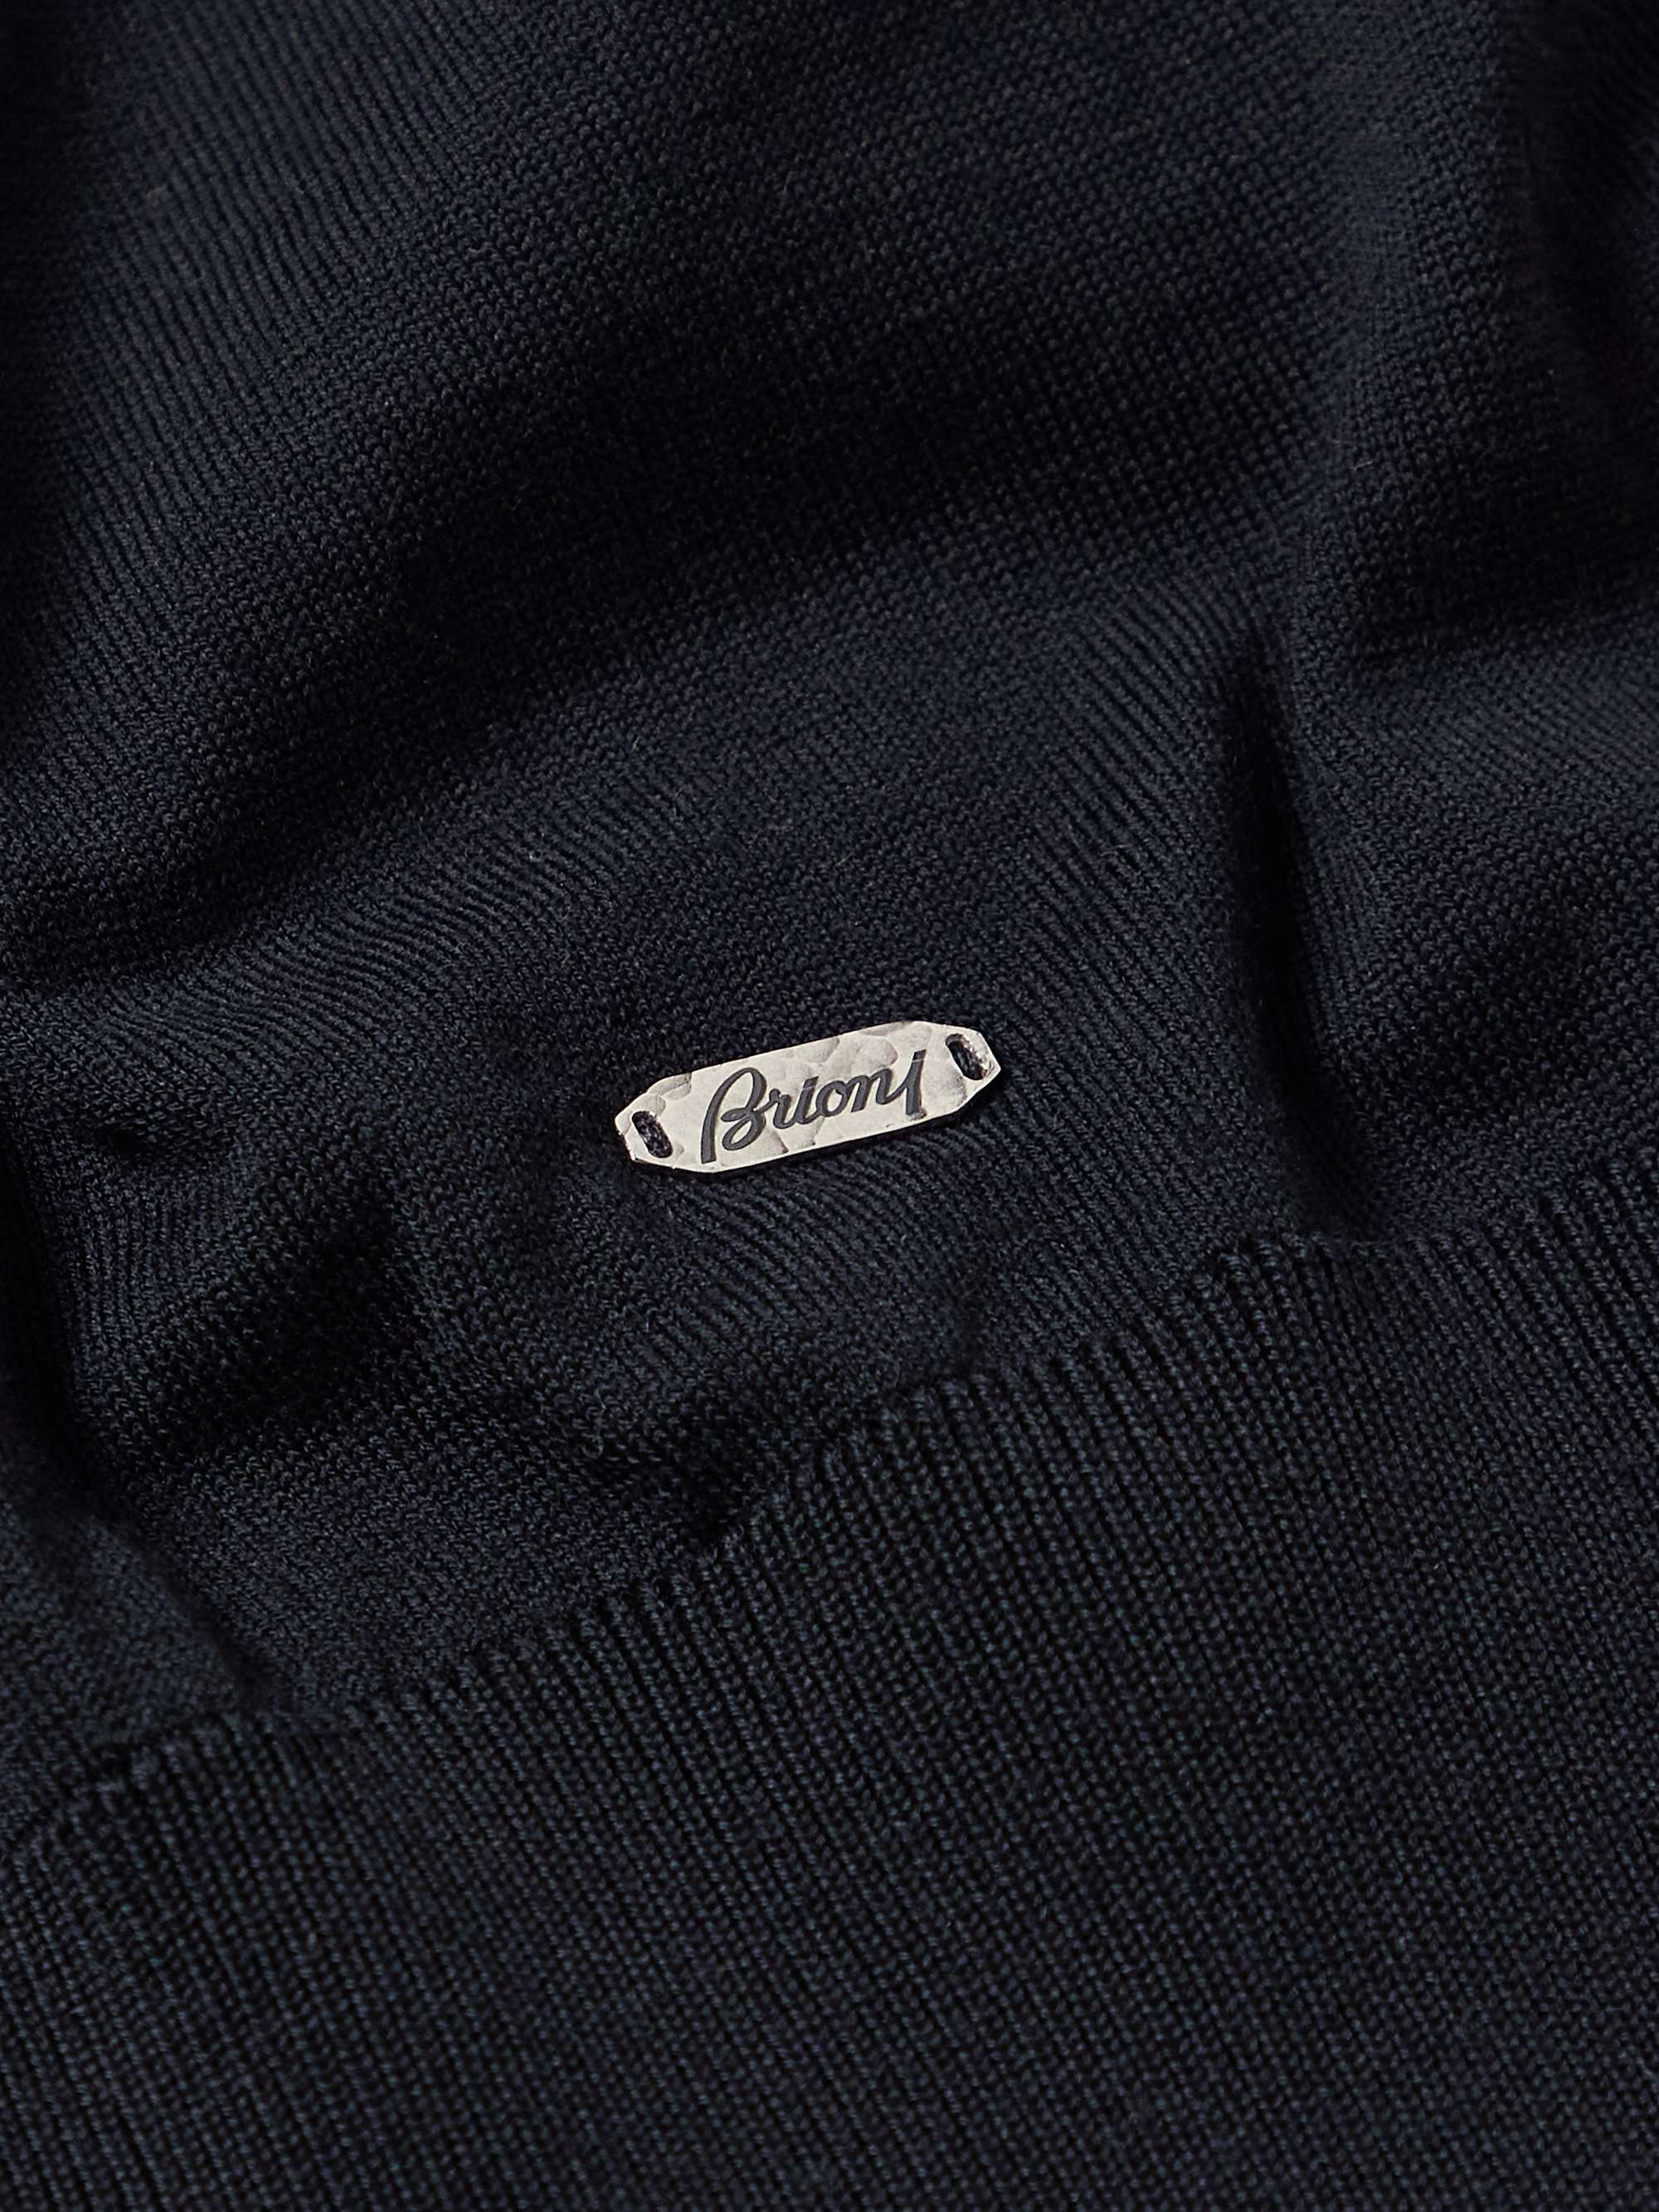 BRIONI Slim-Fit Wool Sweater